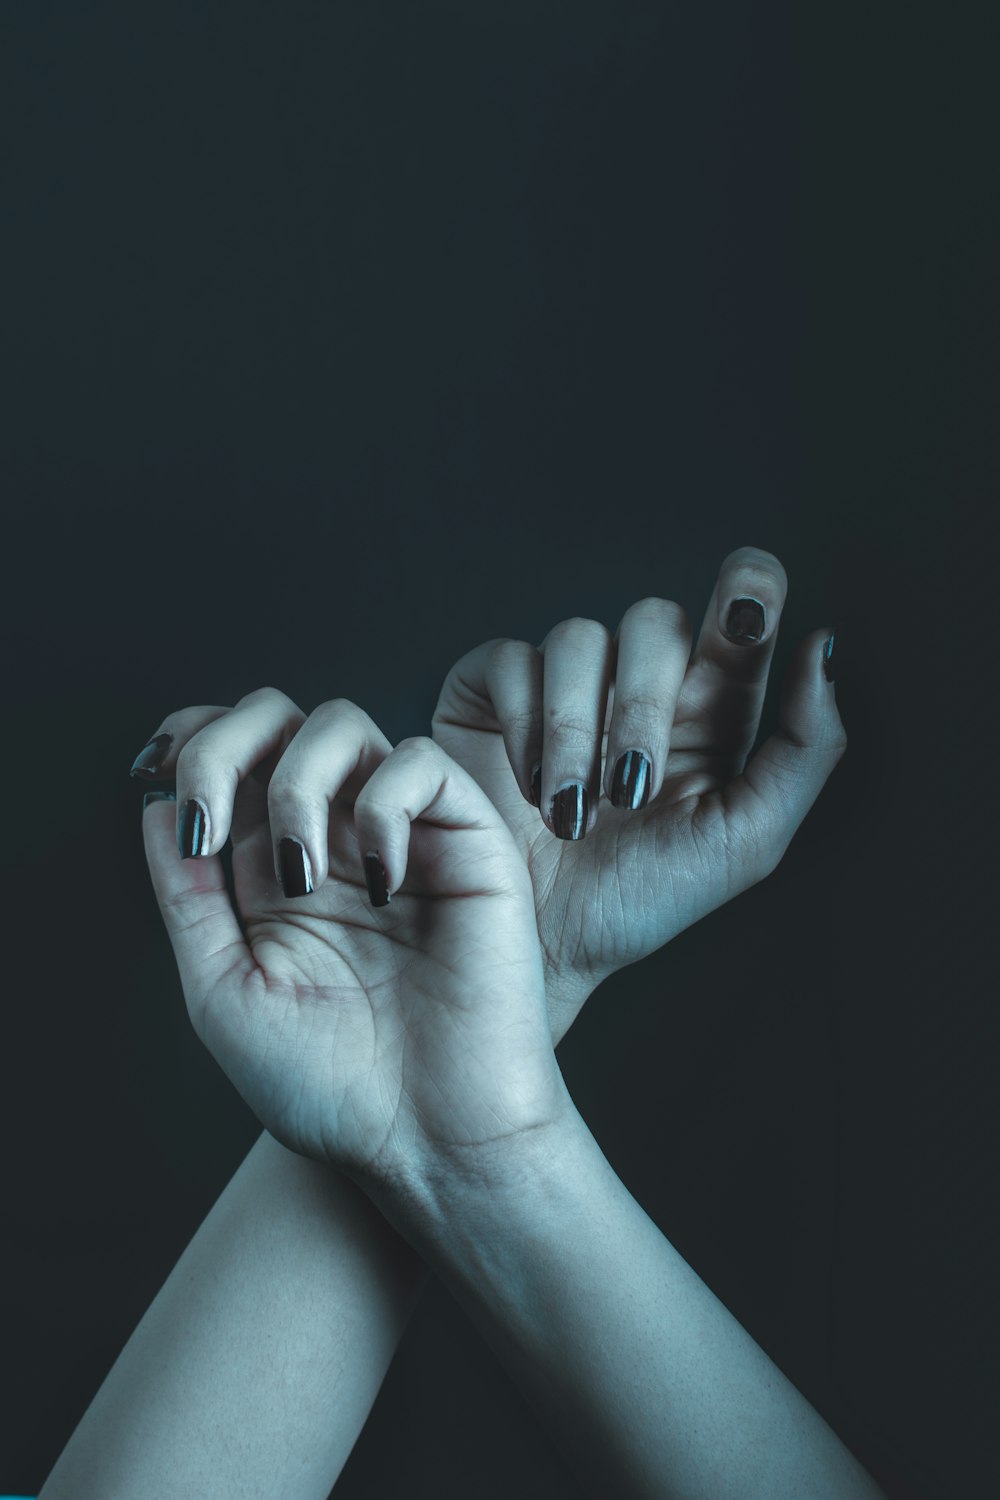 Dos manos con esmalte de uñas blanco y negro sosteniéndose